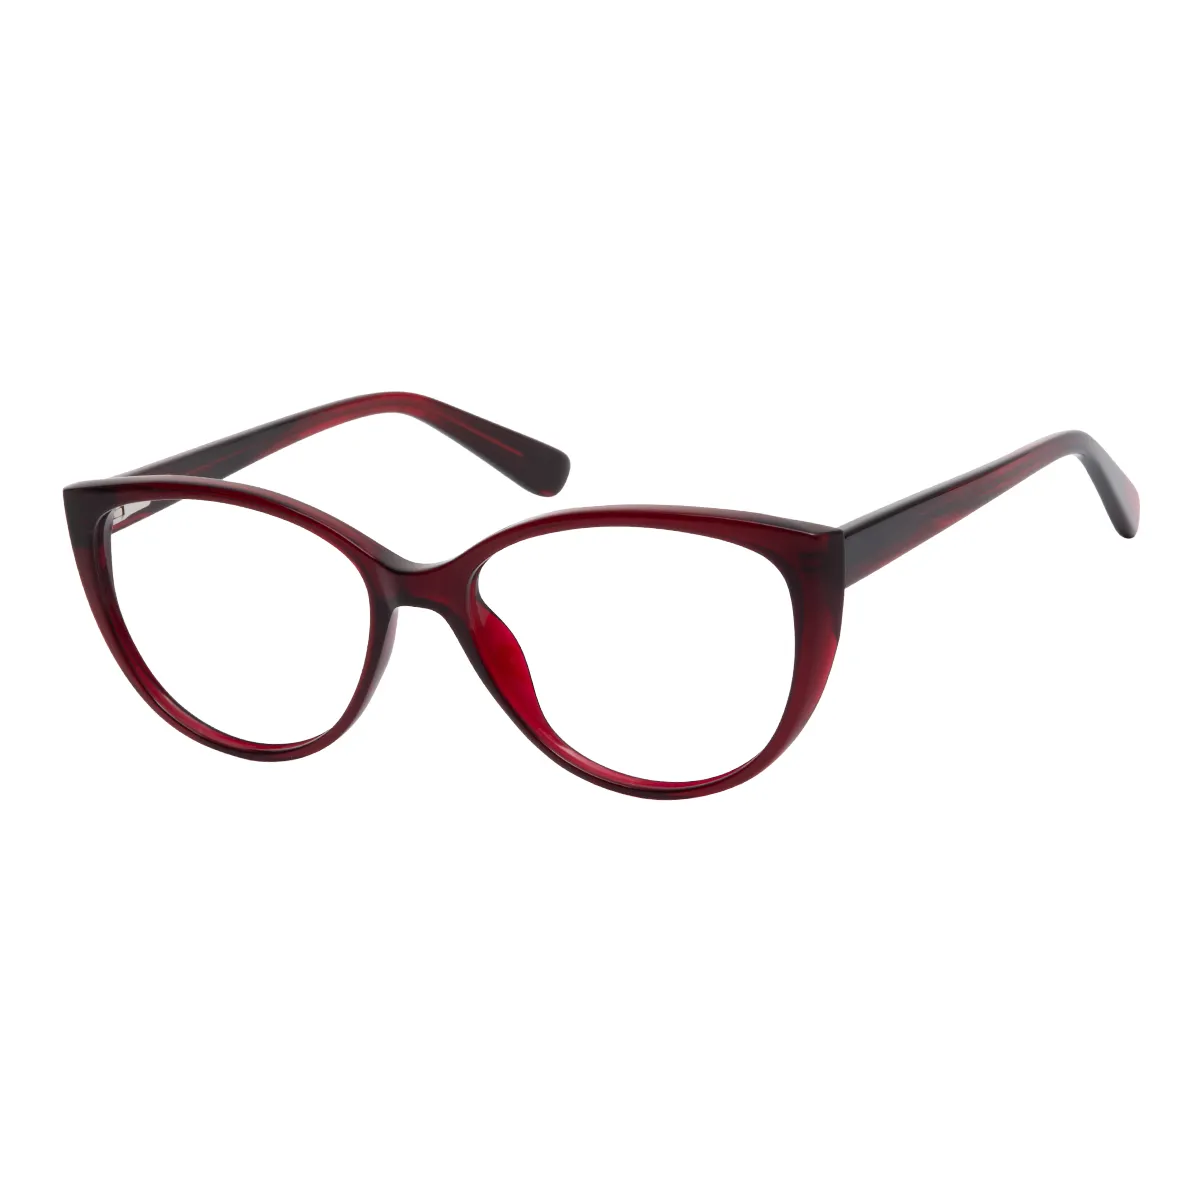 Shanon - Oval Red Glasses for Women